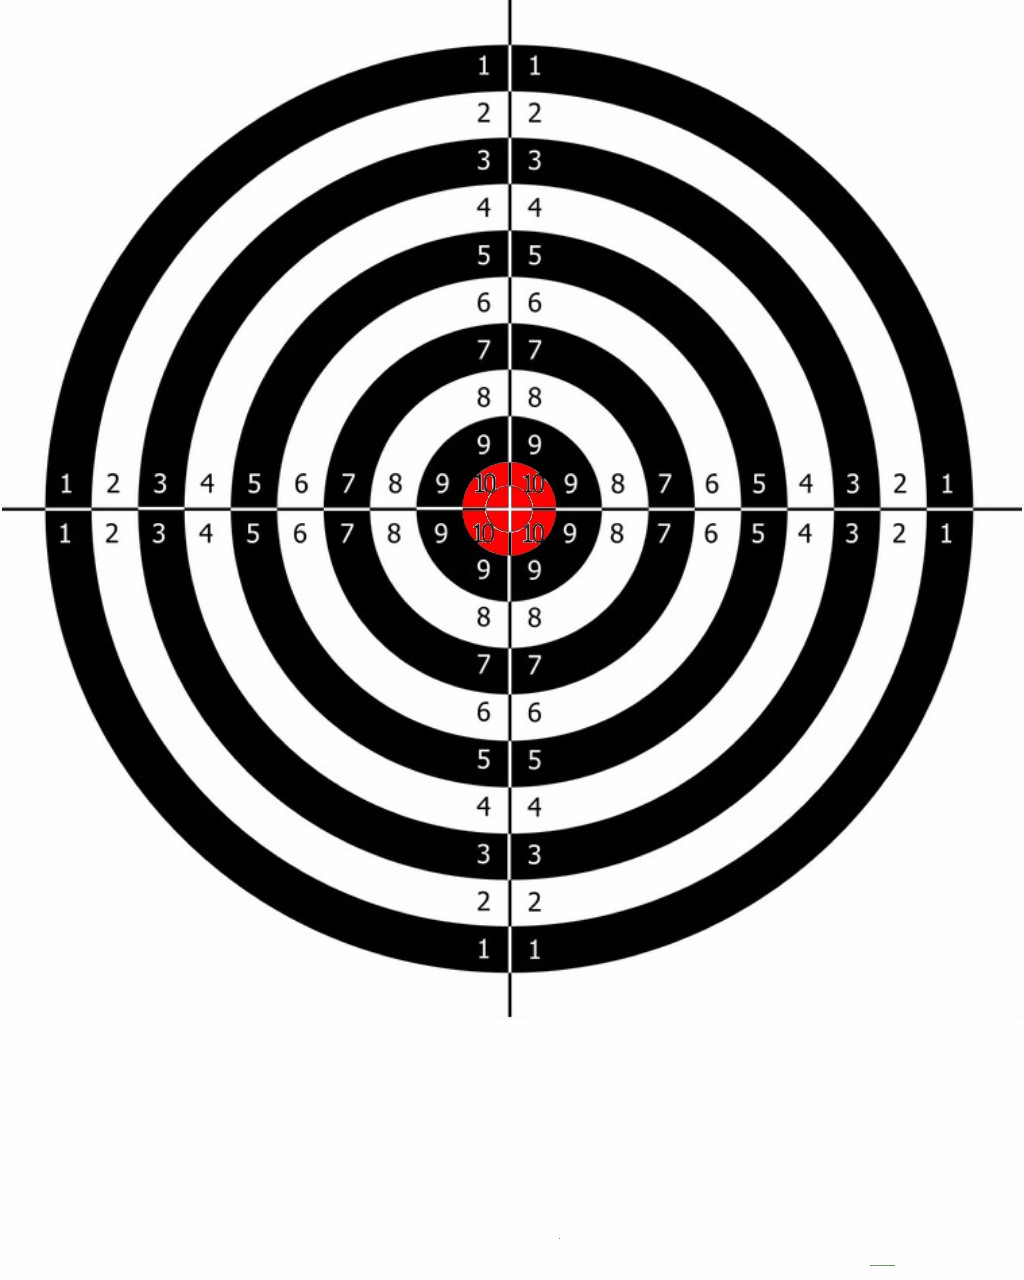 Printable Shooting Targets - mybissim